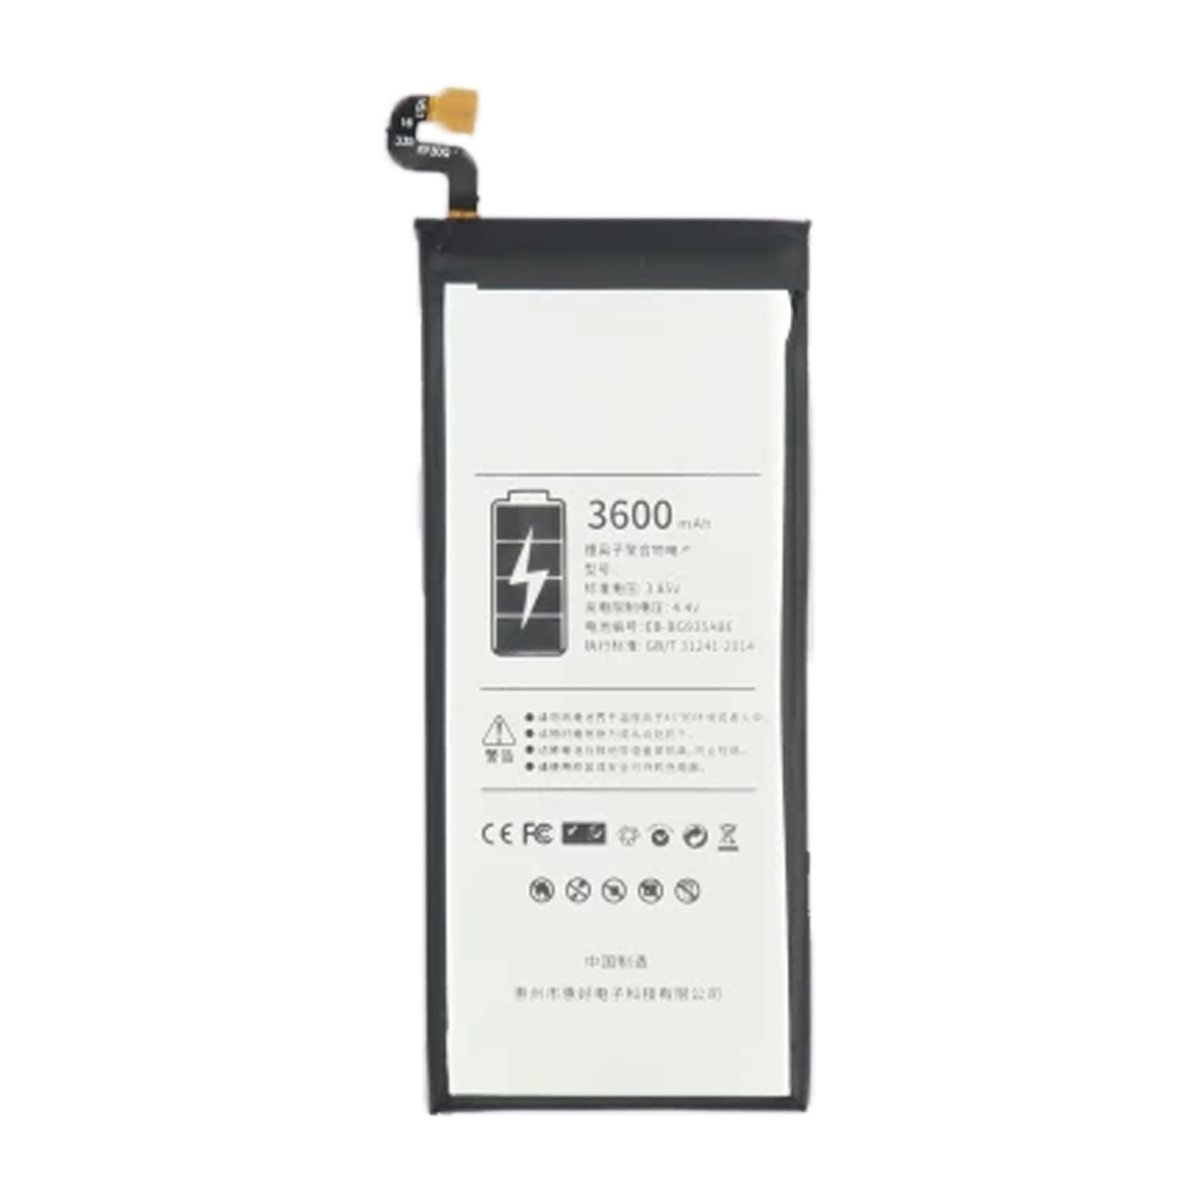 باتری فلیکسبل کد EB-BG935ABE مناسب برای گوشی سامسونگ Galaxy S7 Edge